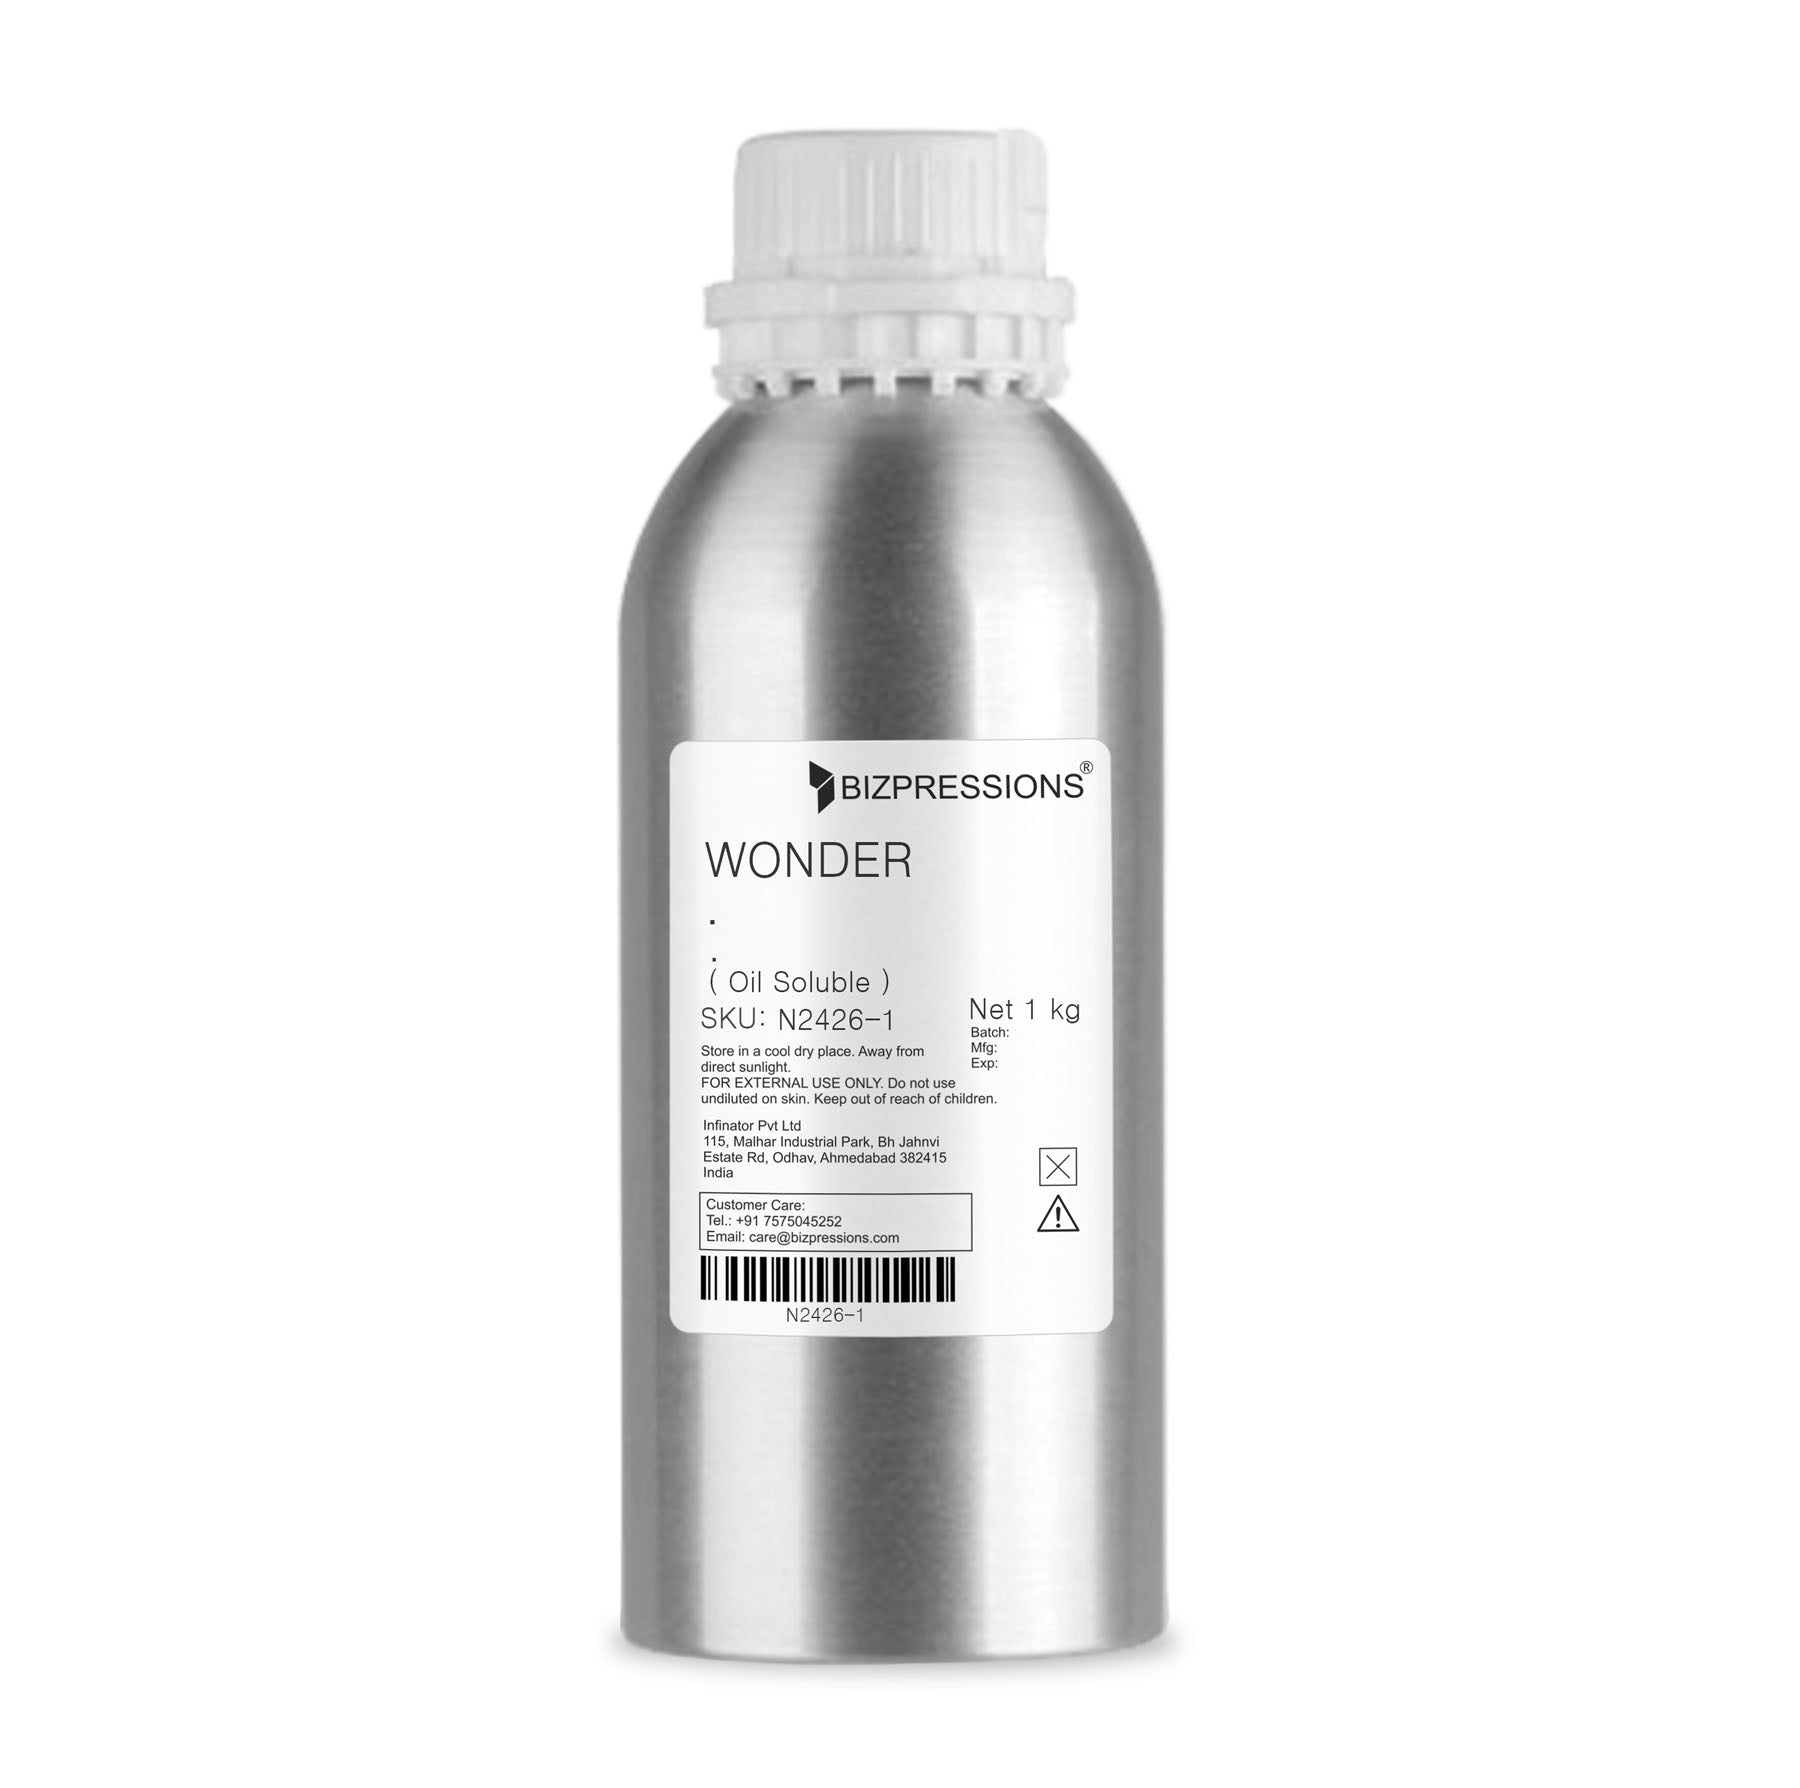 WONDER - Fragrance ( Oil Soluble ) - 1 kg